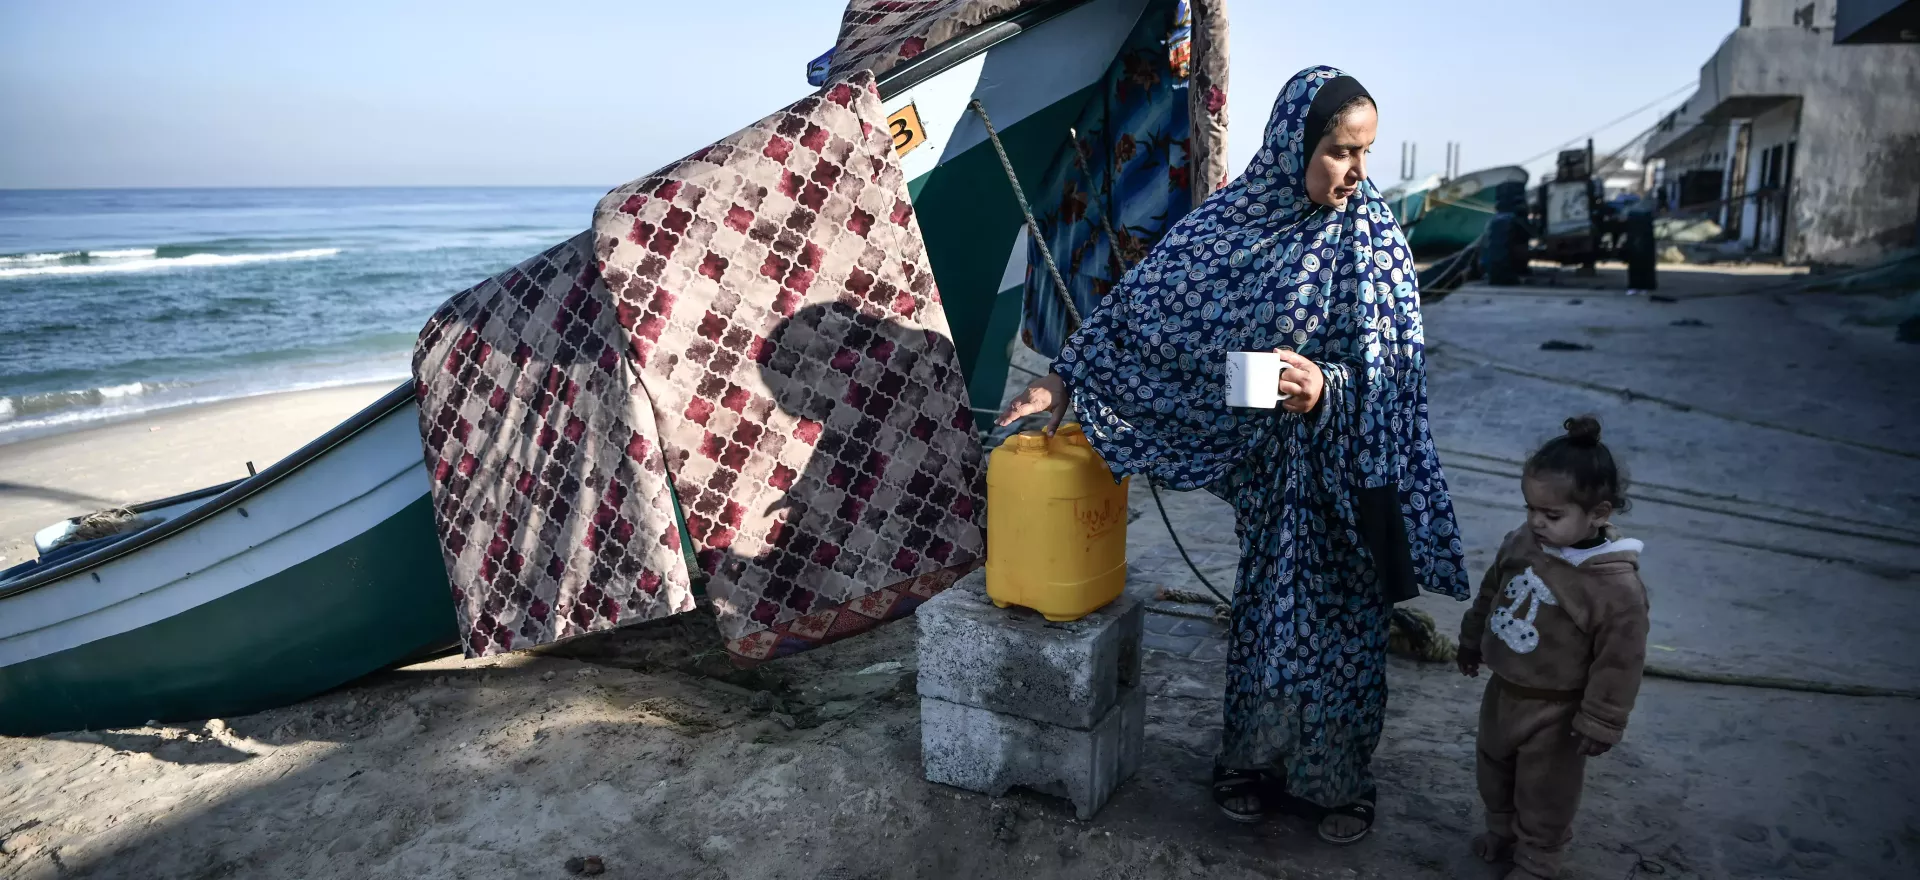 Una madre y su hija pequeña descansan y beben agua junto a un barco de pesca en la playa.